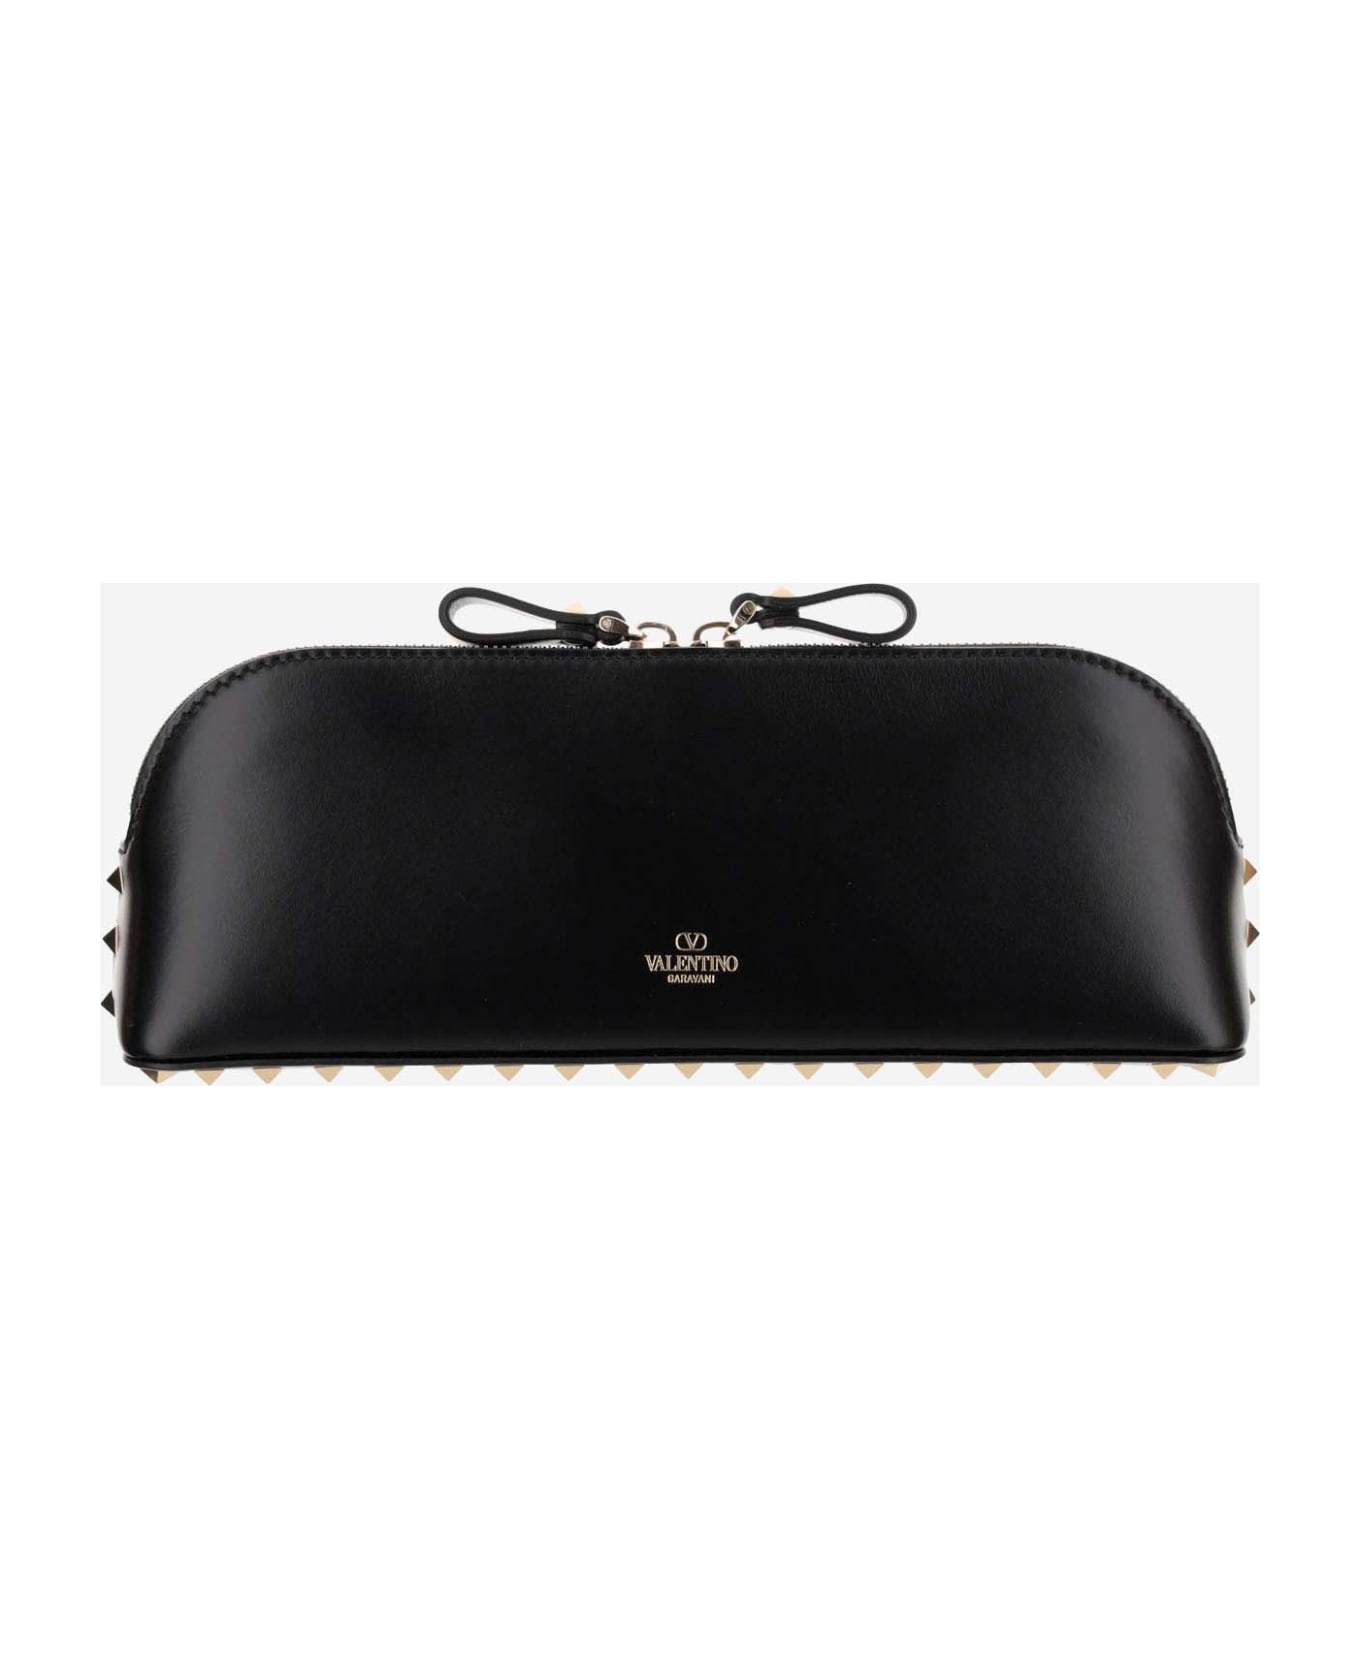 Valentino Garavani Rockstud Leather Handbag | italist, ALWAYS LIKE A SALE